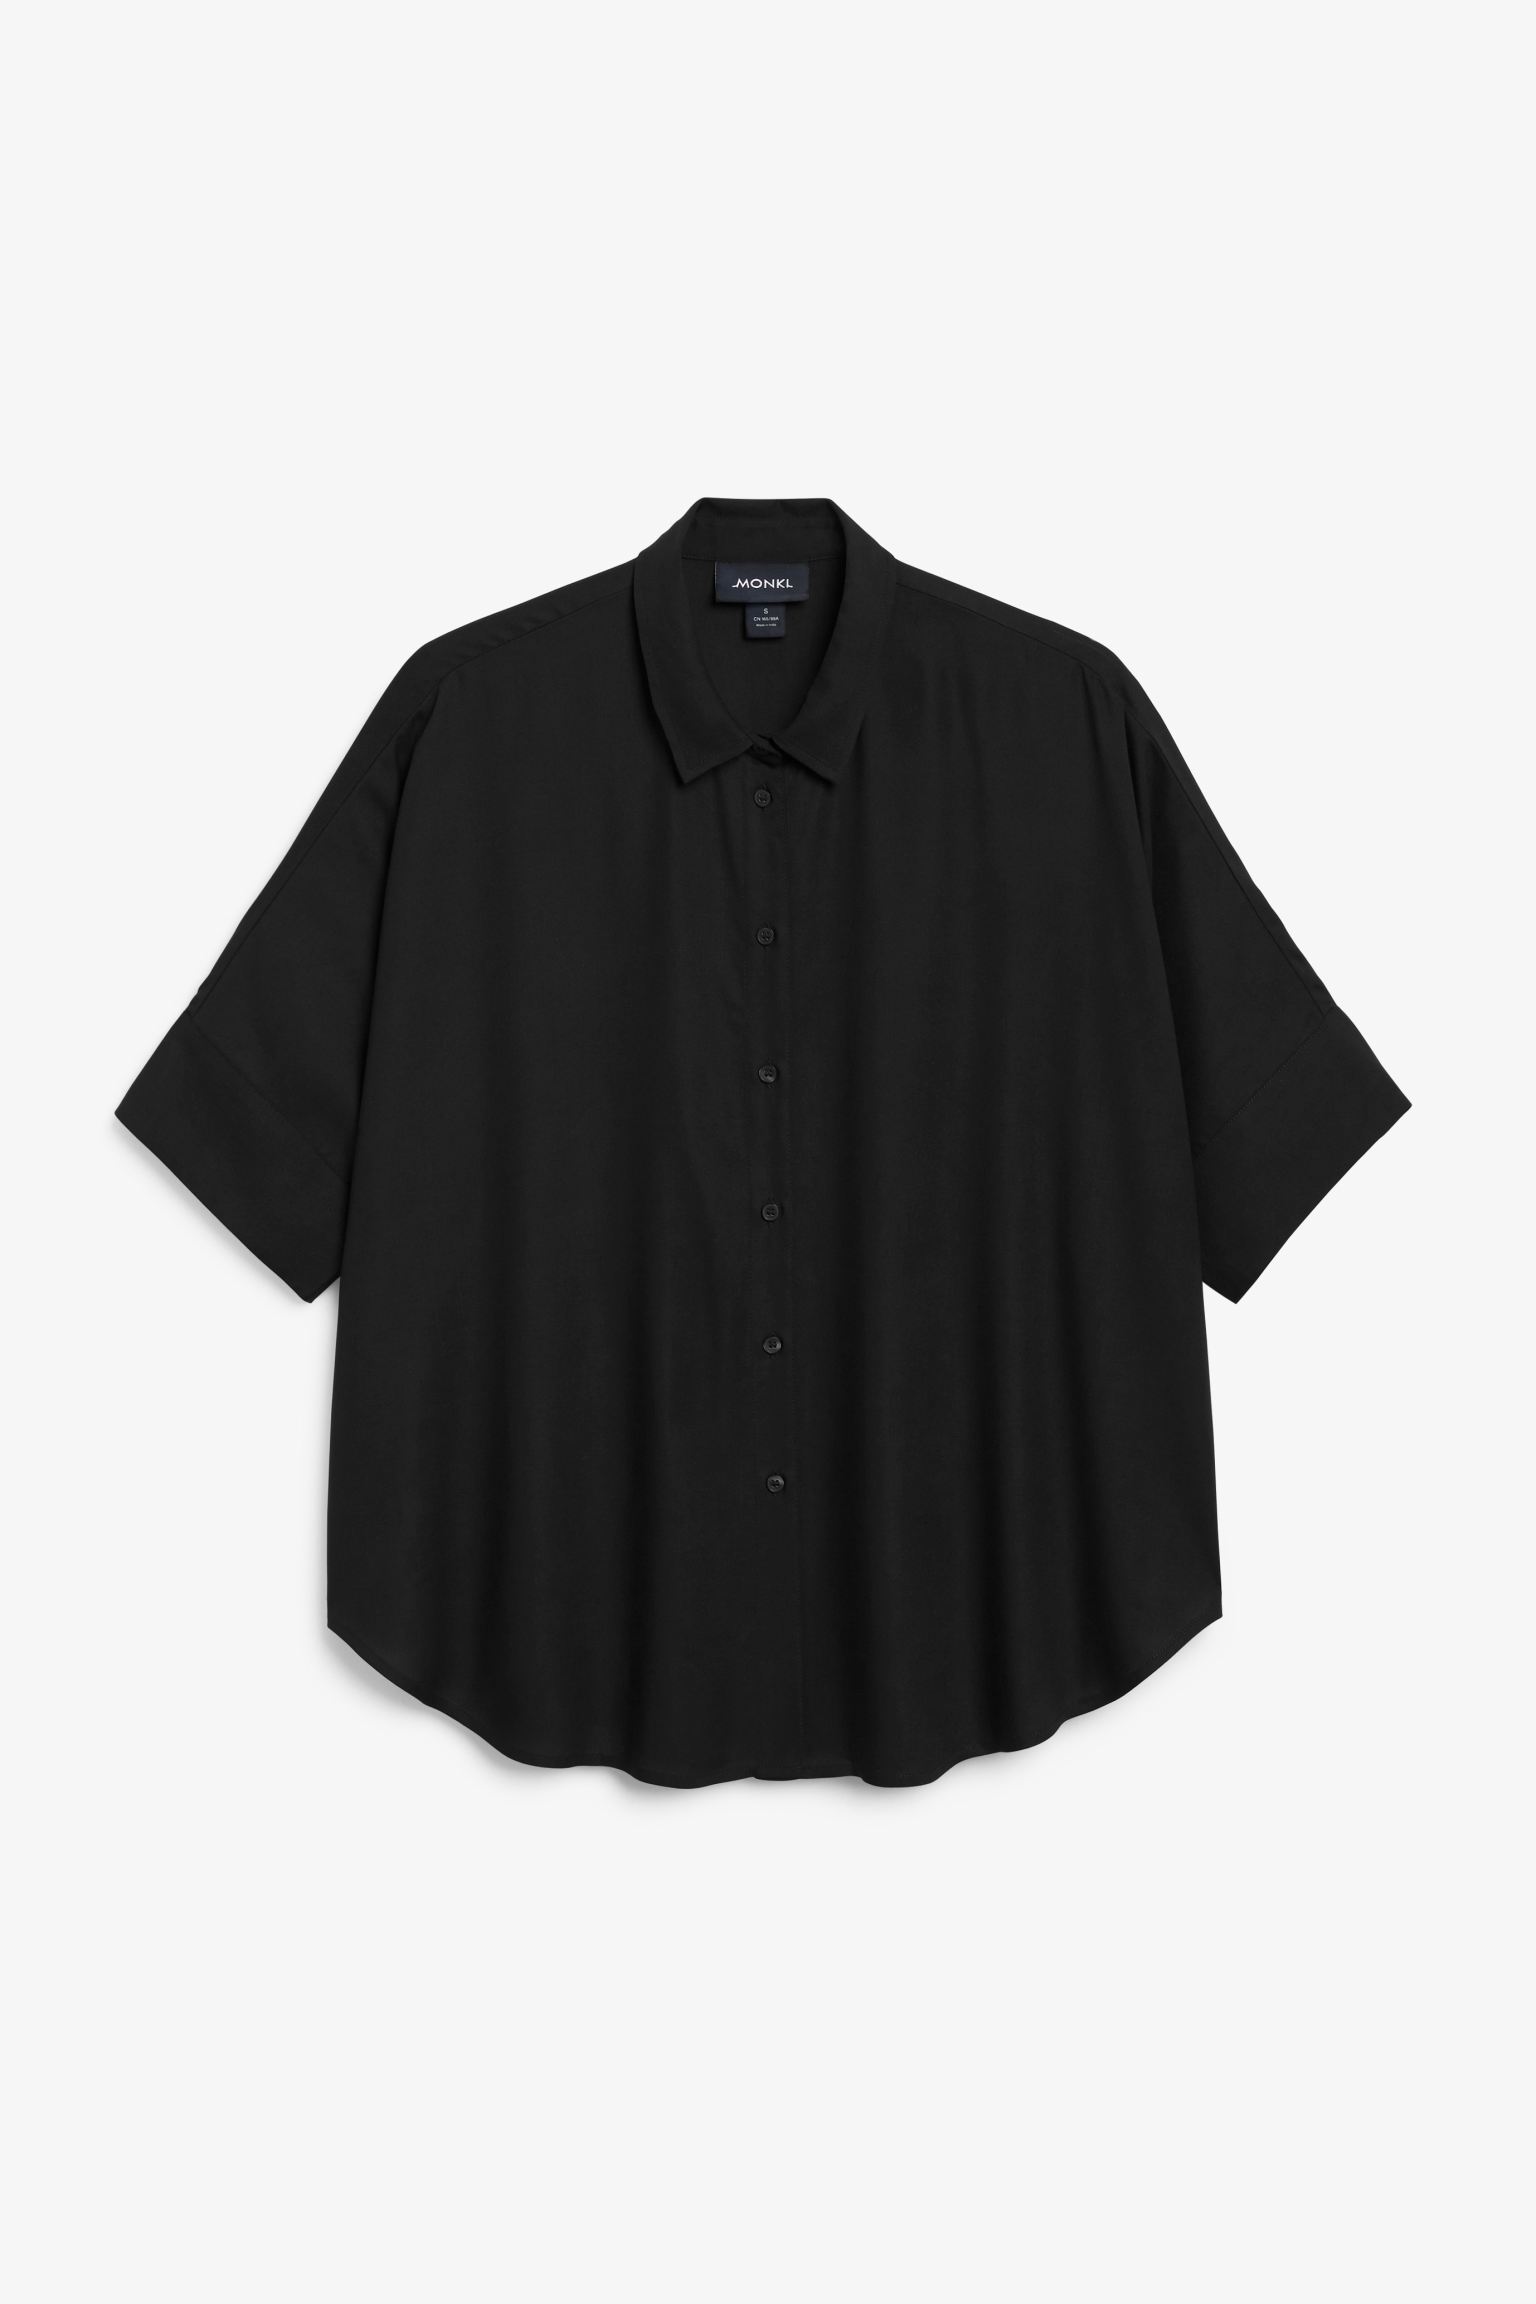 Рубашка женская Monki 937119001 черная L (доставка из-за рубежа)